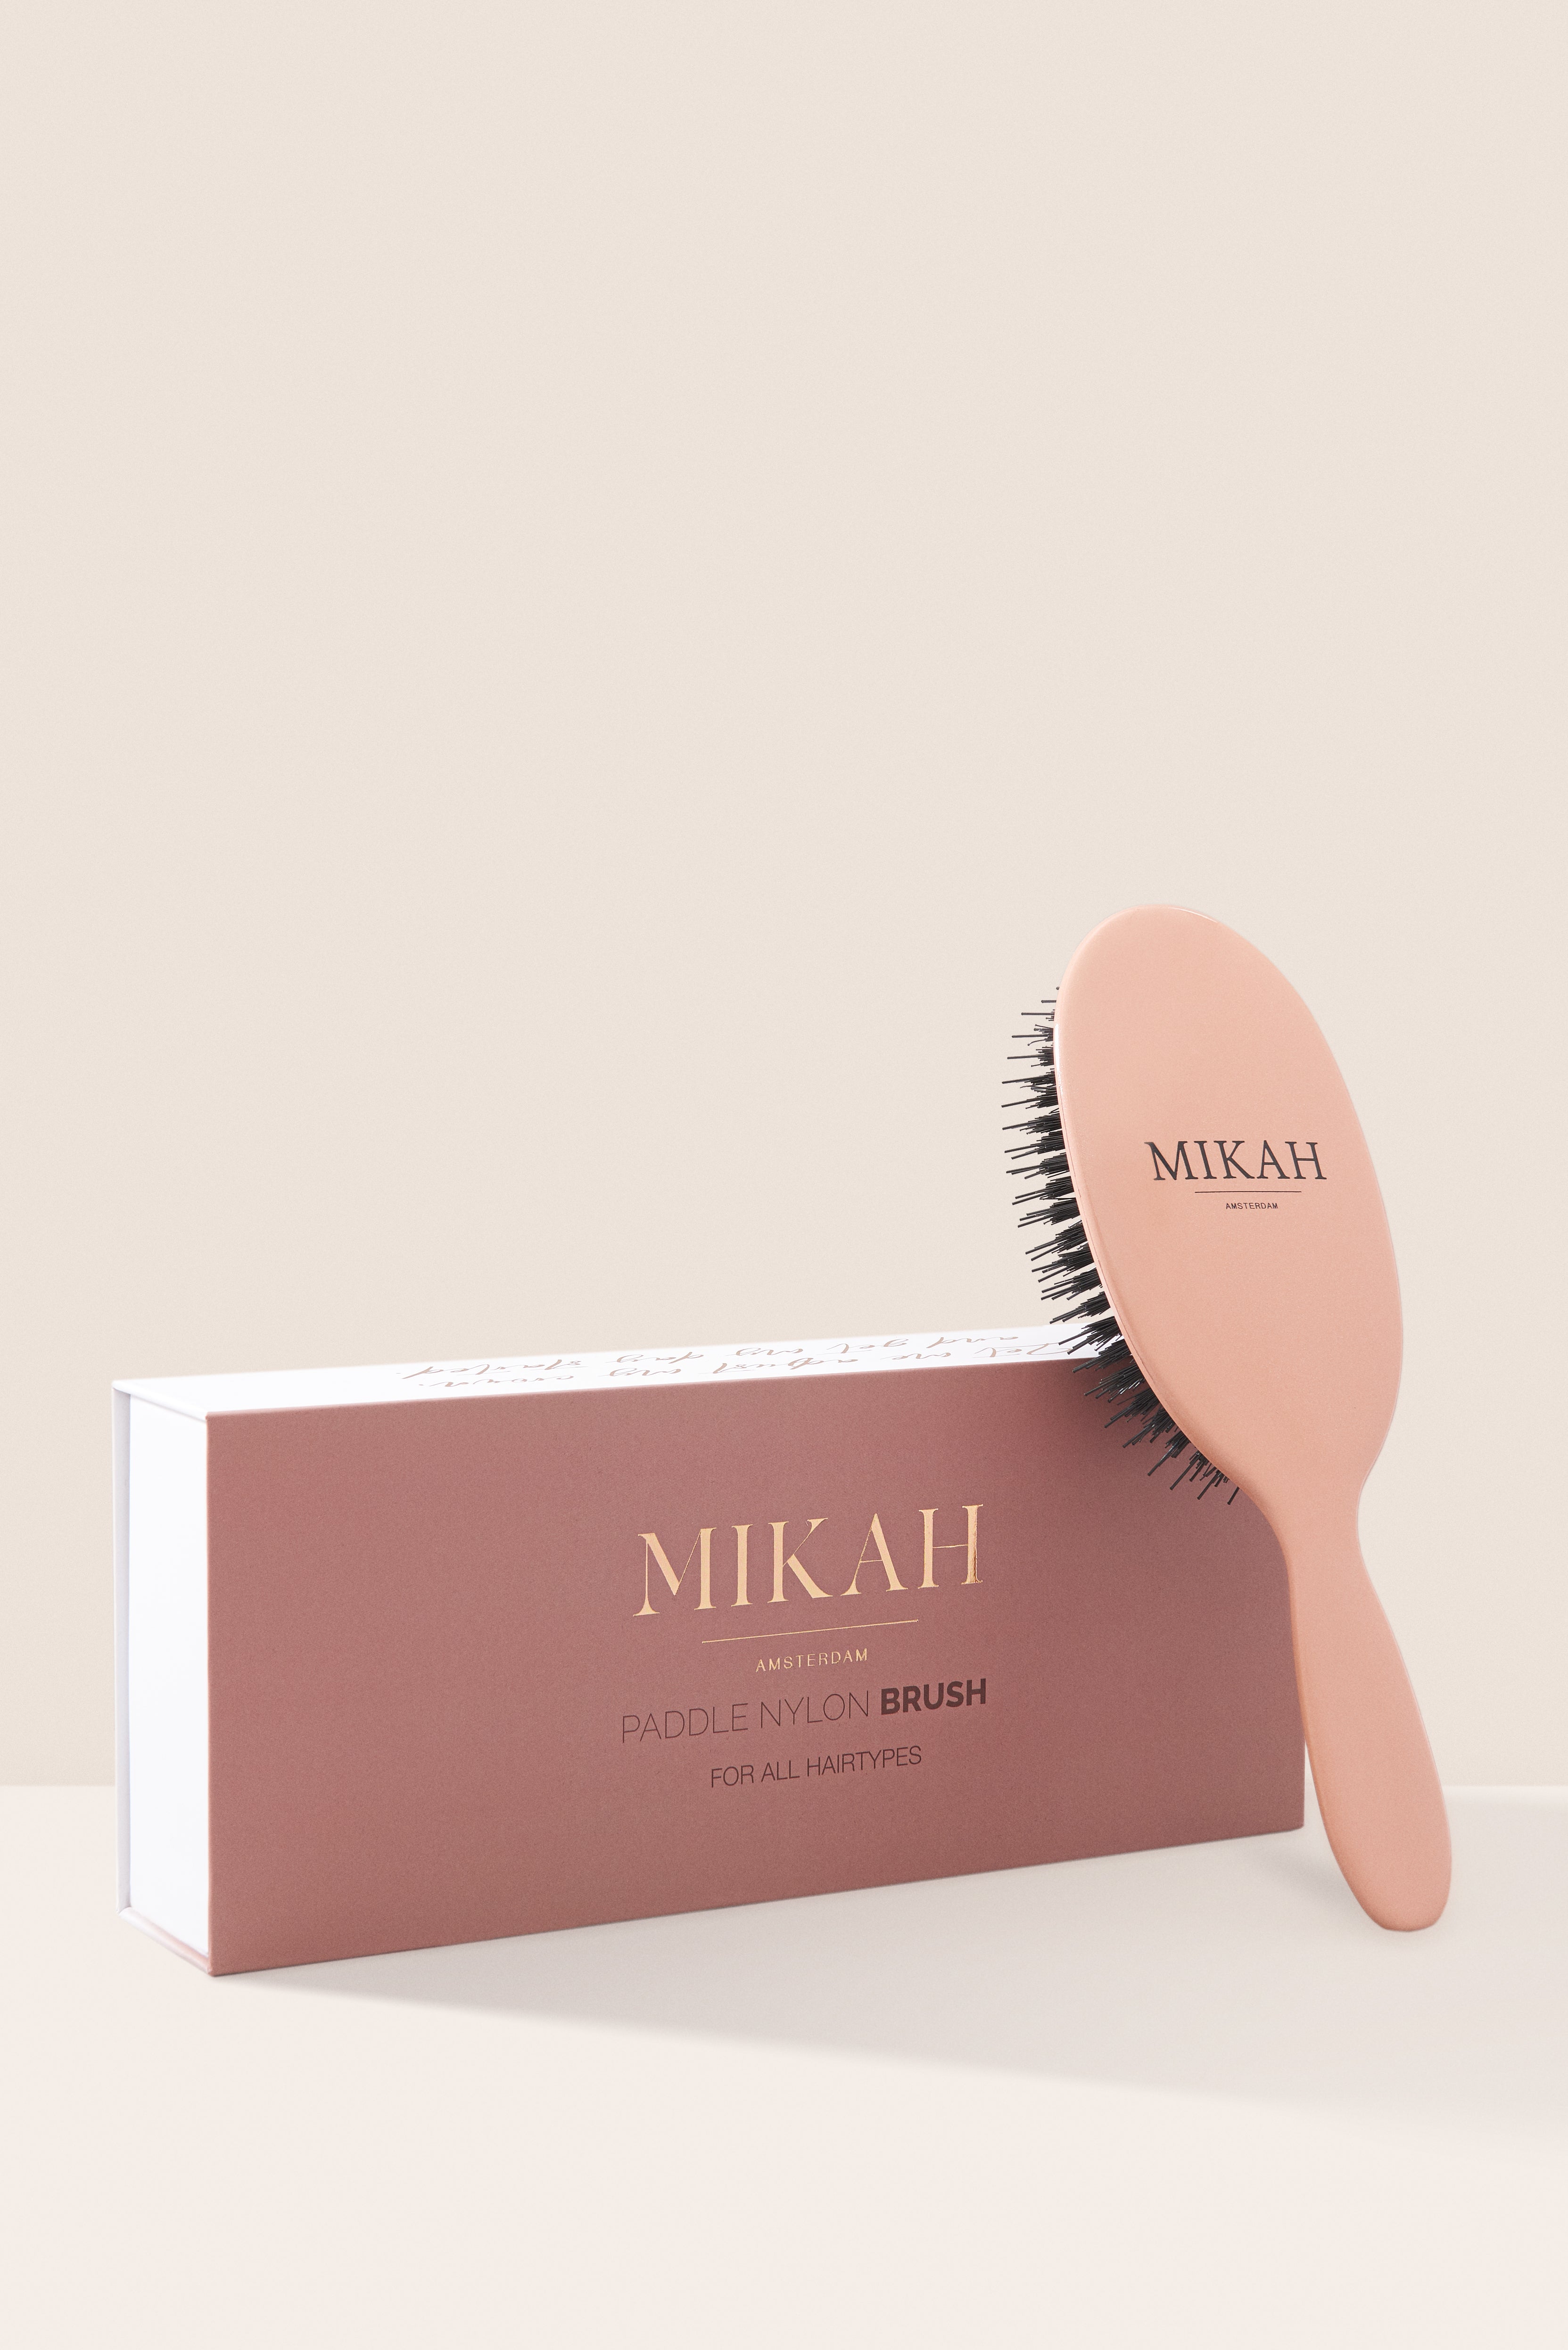 MIKAH - Paddle Nylon Hairbrush